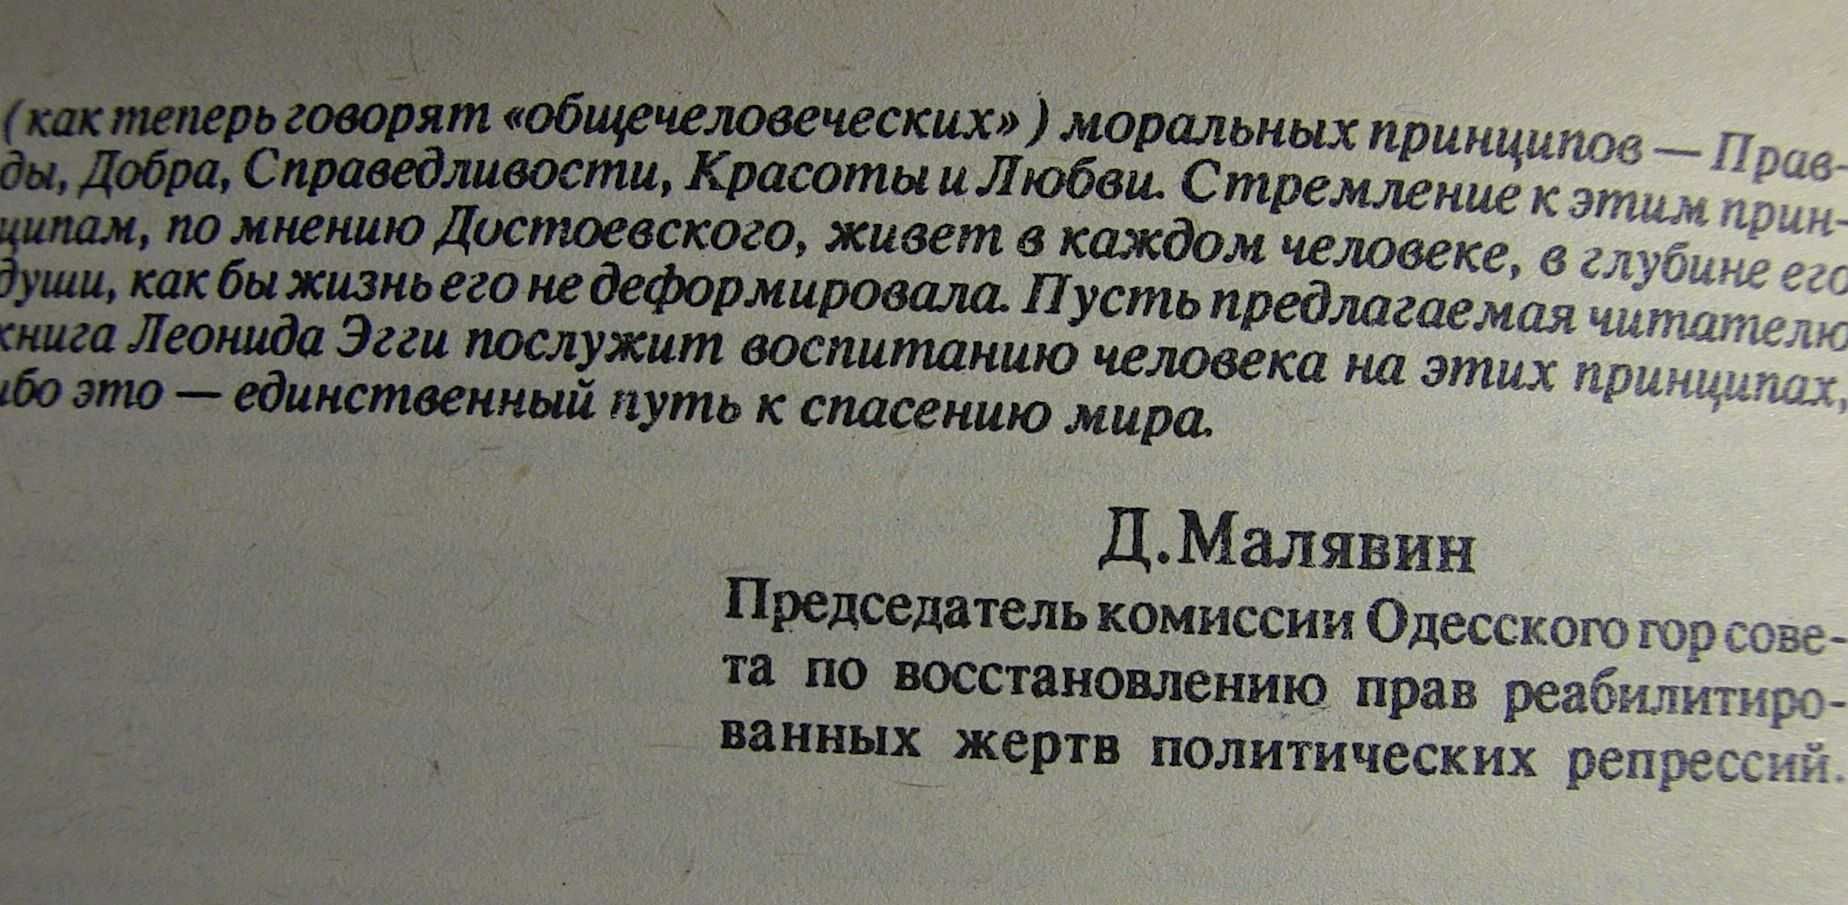 Репрессированные до рождения. Островок ГУЛАГа. Арест., Л. Эгги. 1993г.